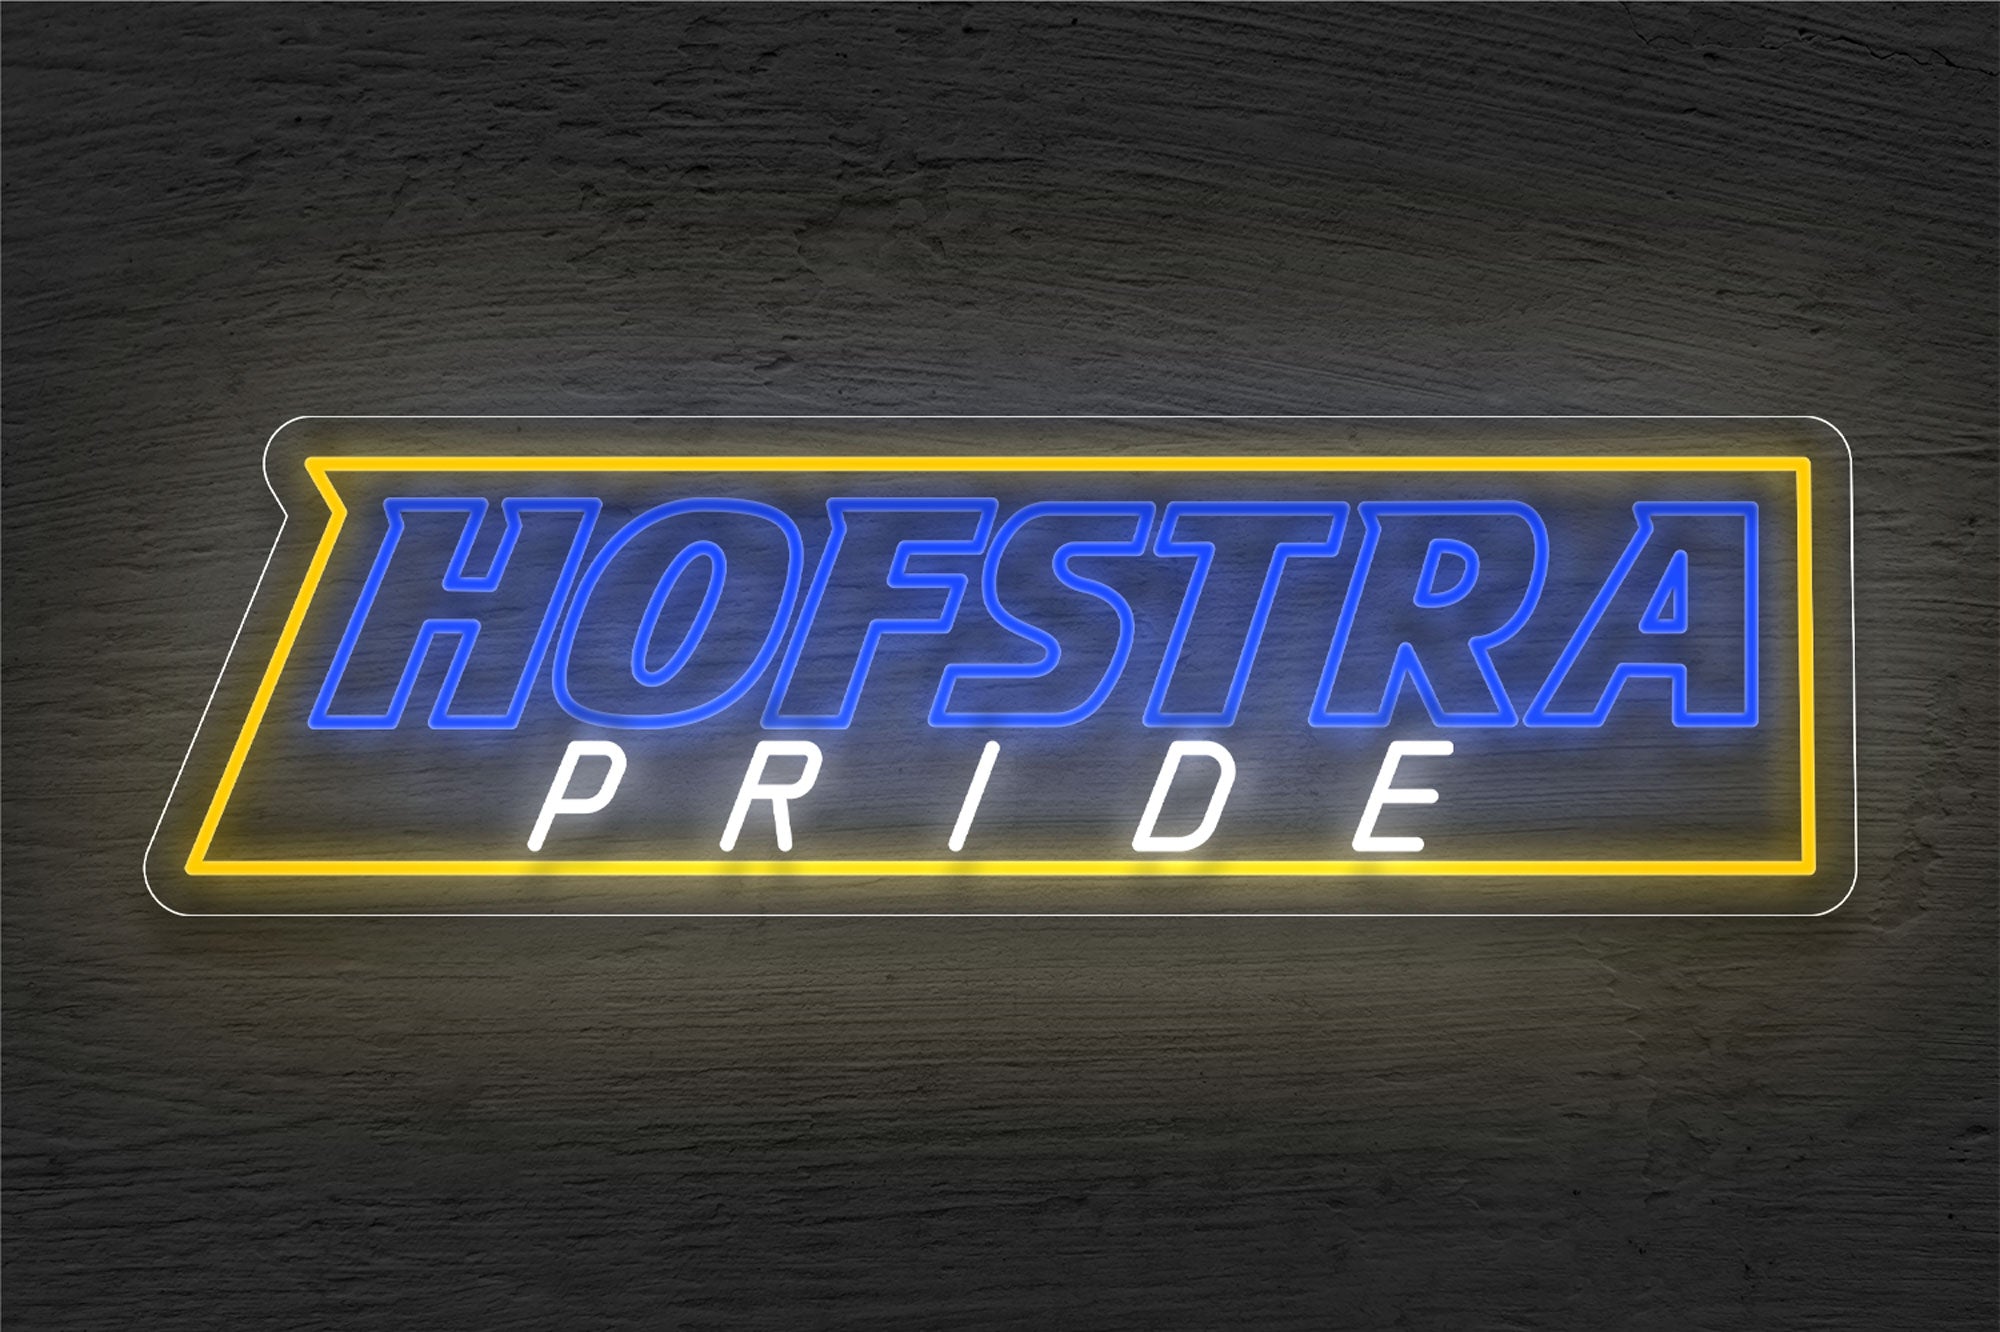 Hofstra Pride Men's Basketball LED Neon Sign